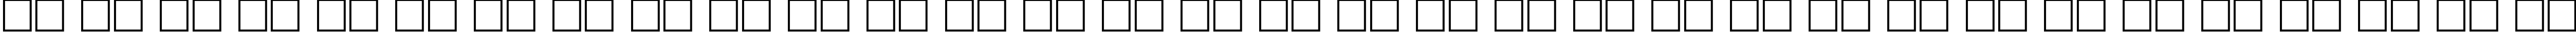 Пример написания русского алфавита шрифтом ProunBCTT Bold